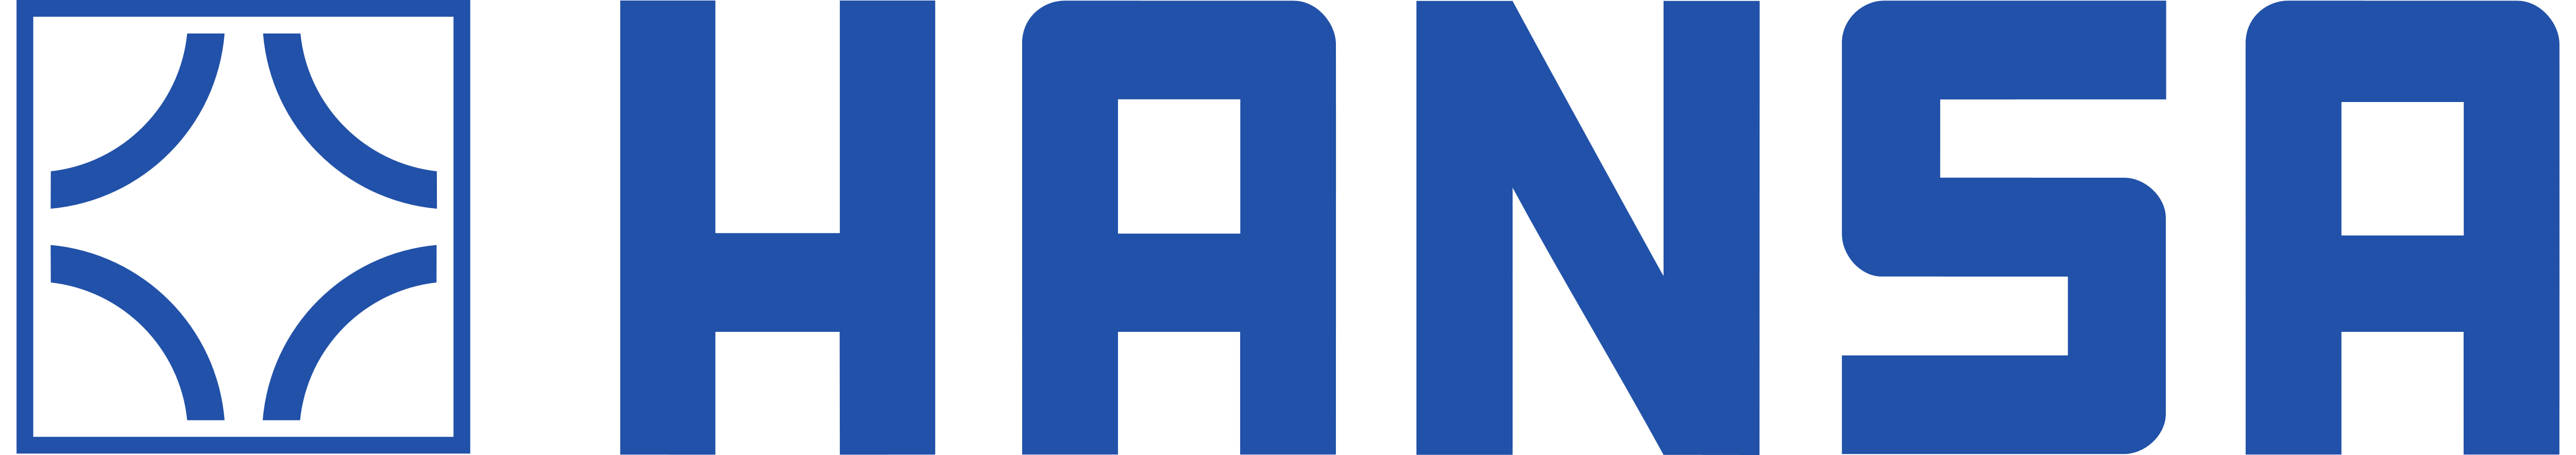 Hansa_logo